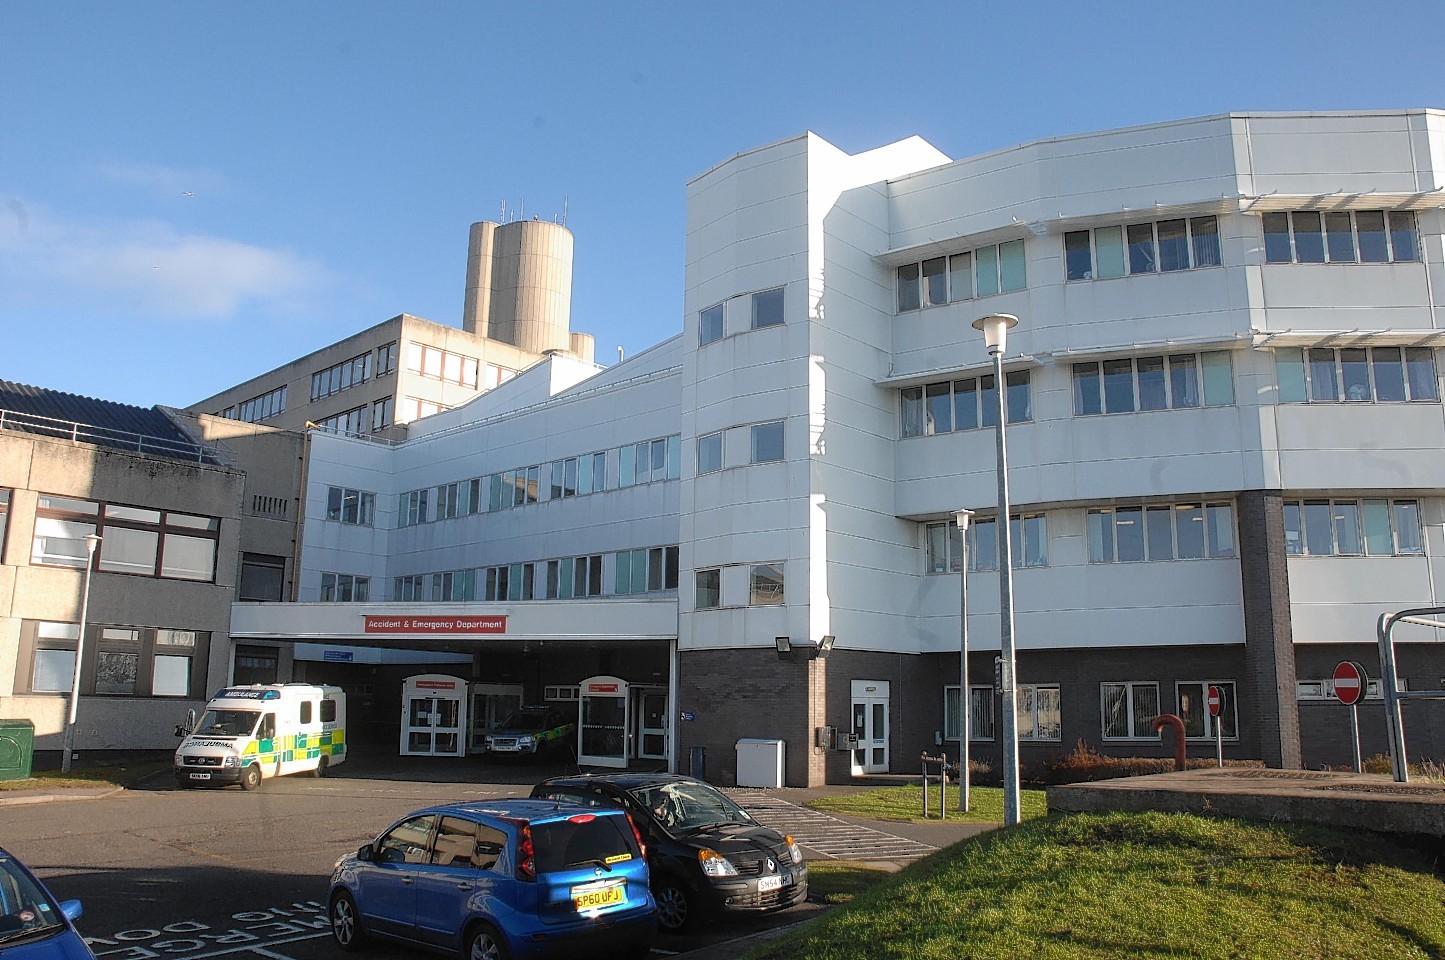 Ninewells Hospital in Dundee.